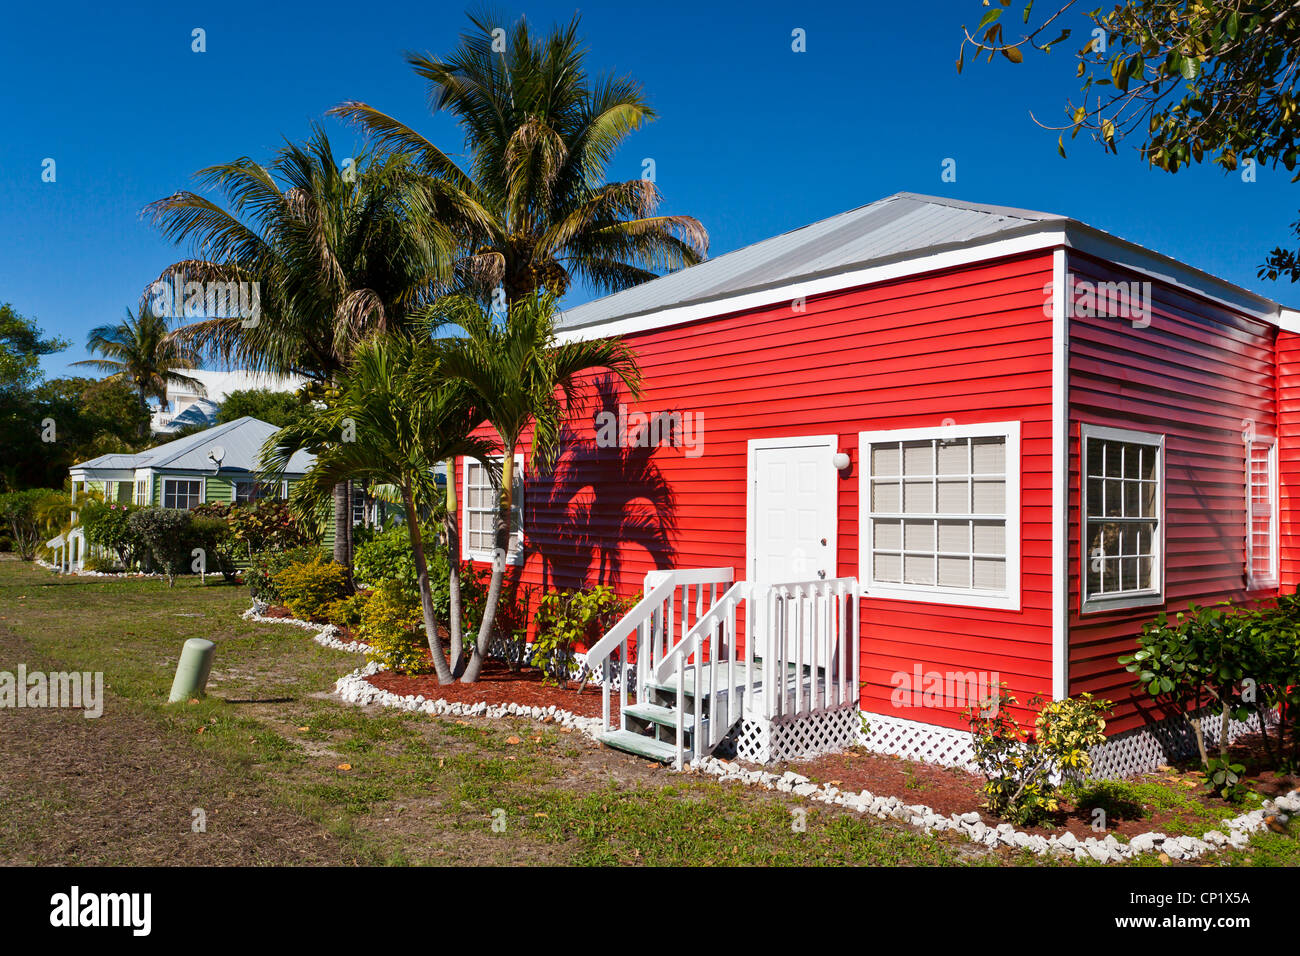 The Castaways Resort cottages on Captiva Island, Florida, USA. Stock Photo